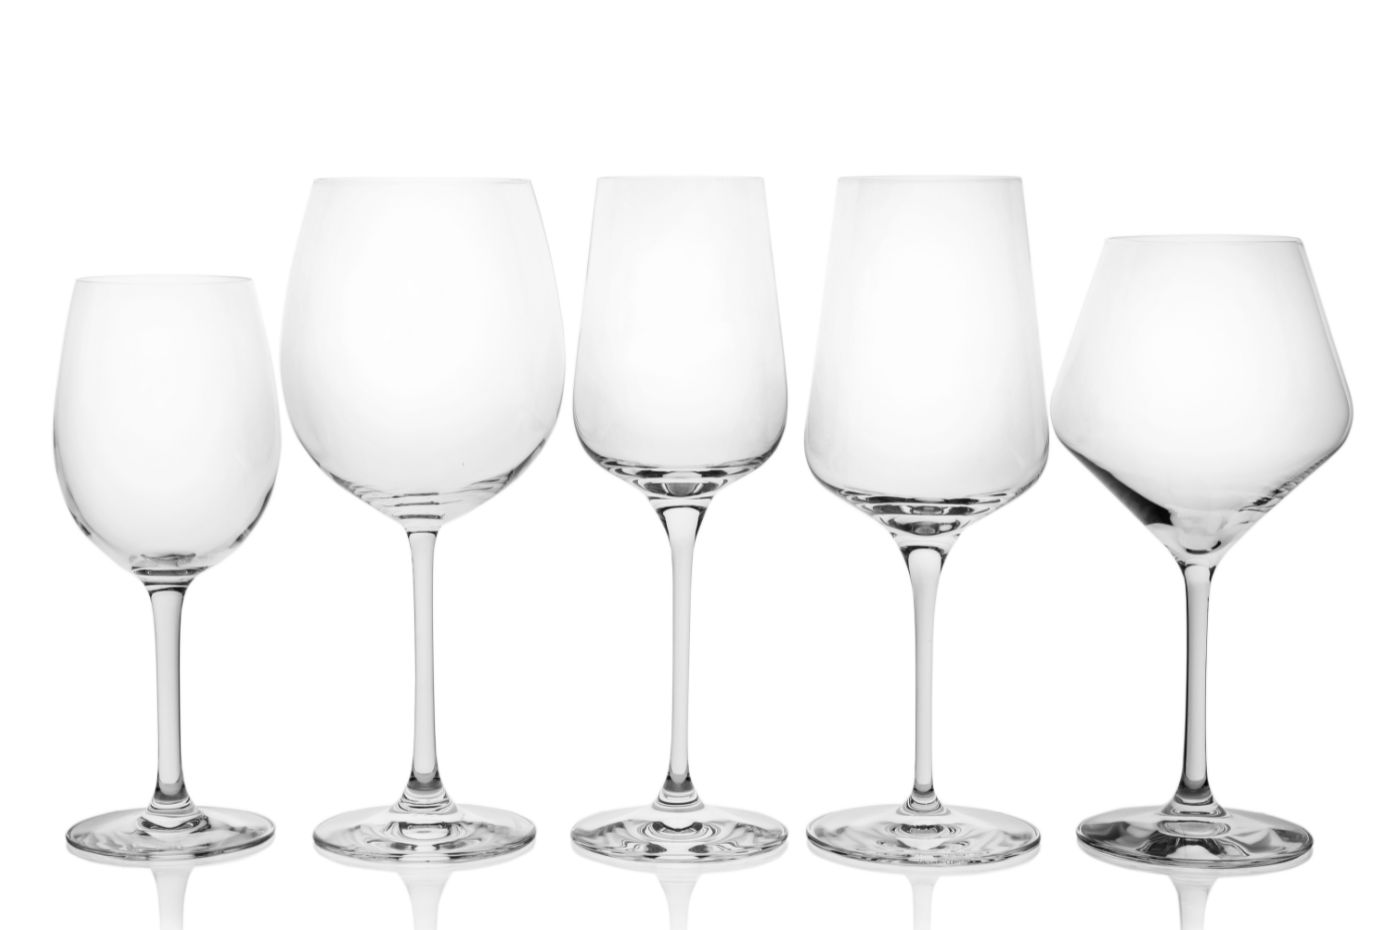 Os formatos das taças de vinho são projetos a fim de realçar as características únicas de aromas e sabores